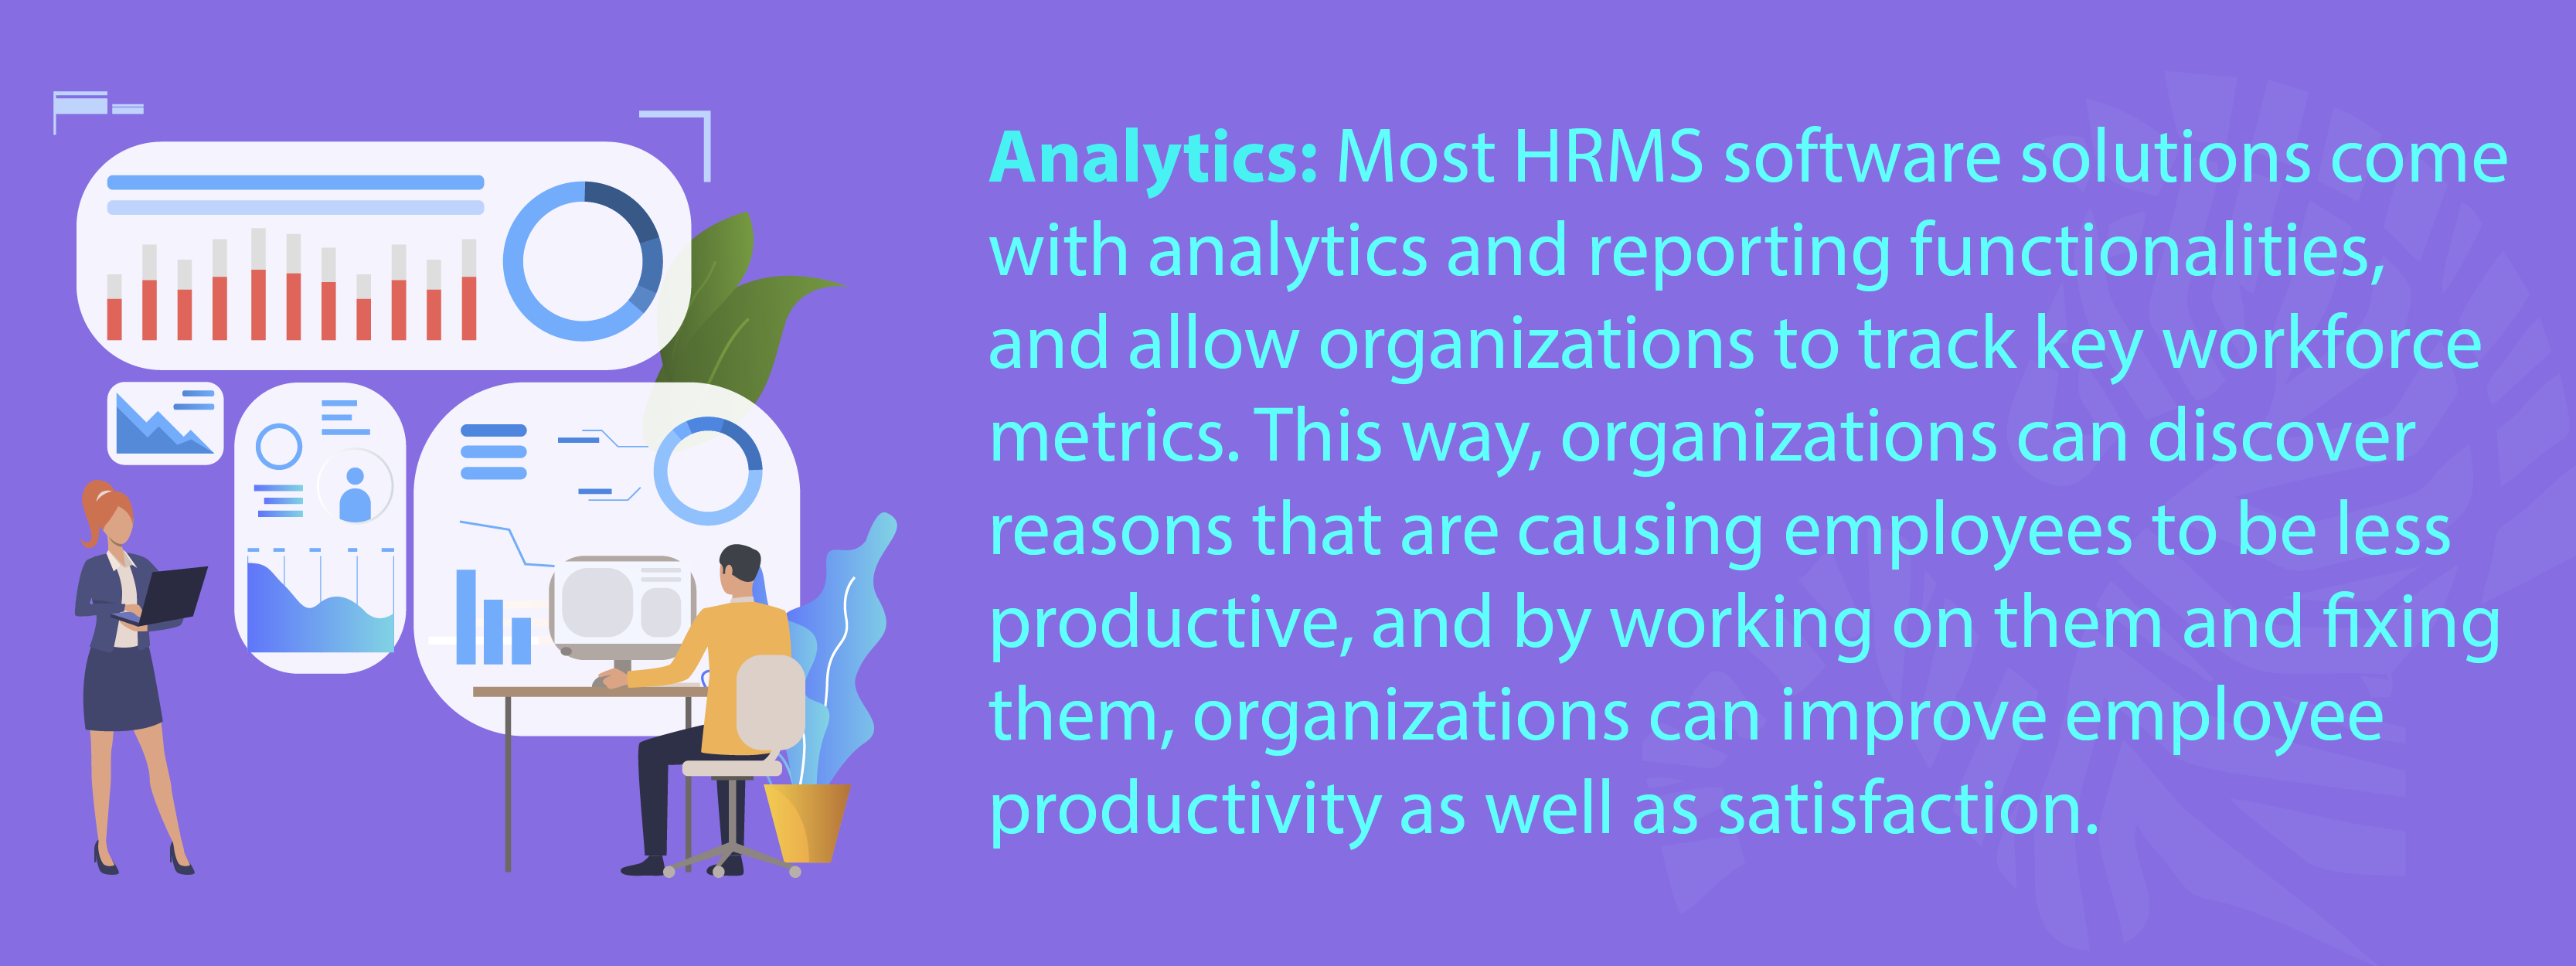 HR analytics software